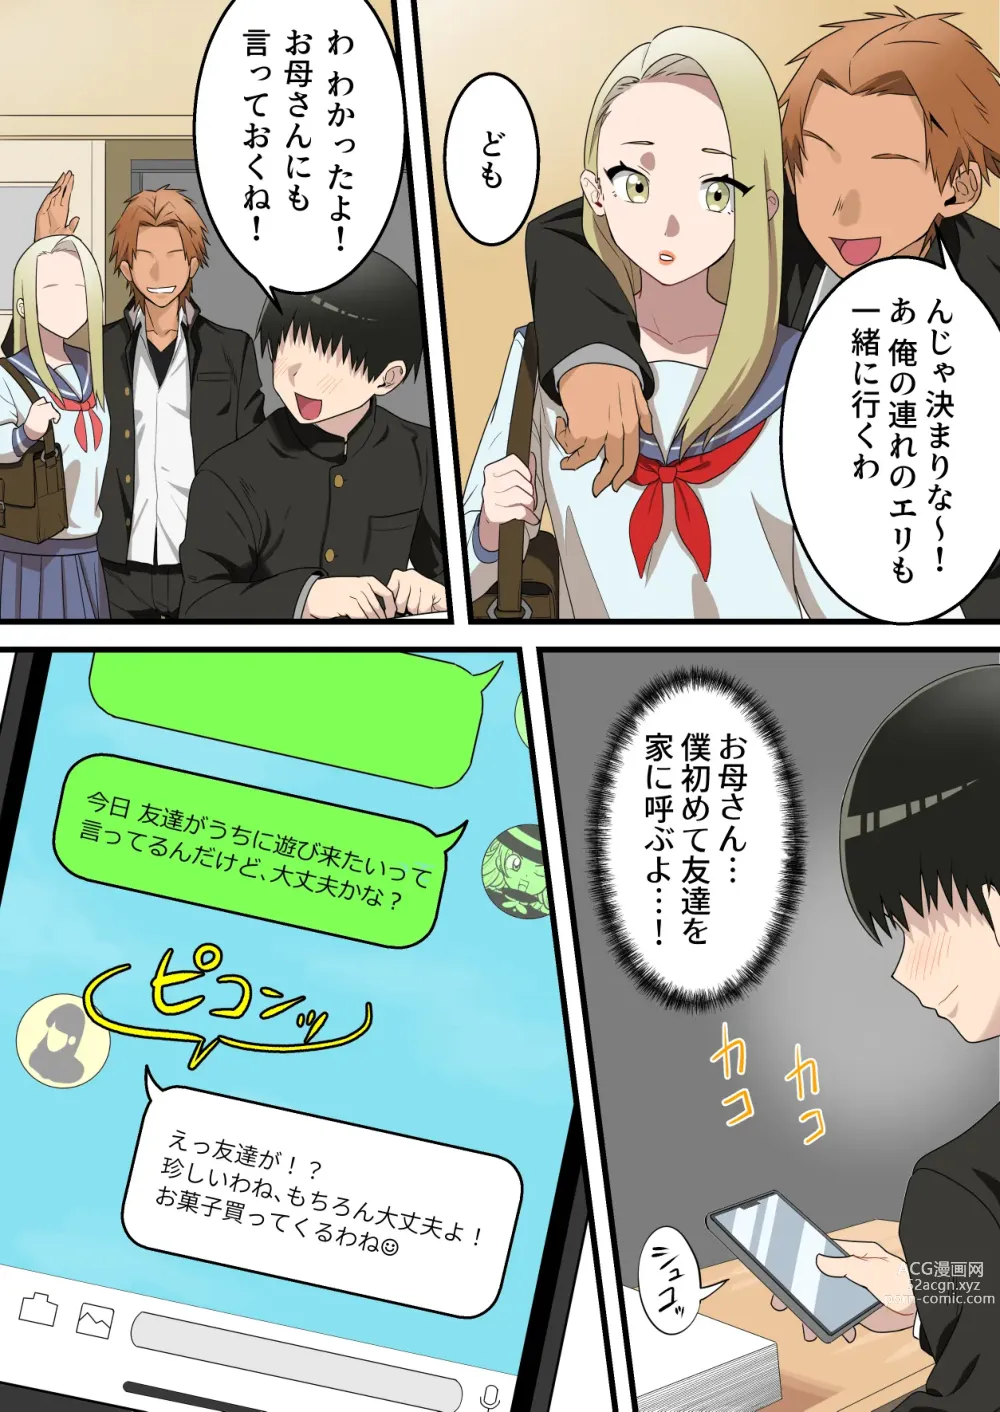 Page 7 of doujinshi Yashikatta Okaa-san ga Musuko wo Ijimeru Yankee no Ue de Koshi wo Furu made